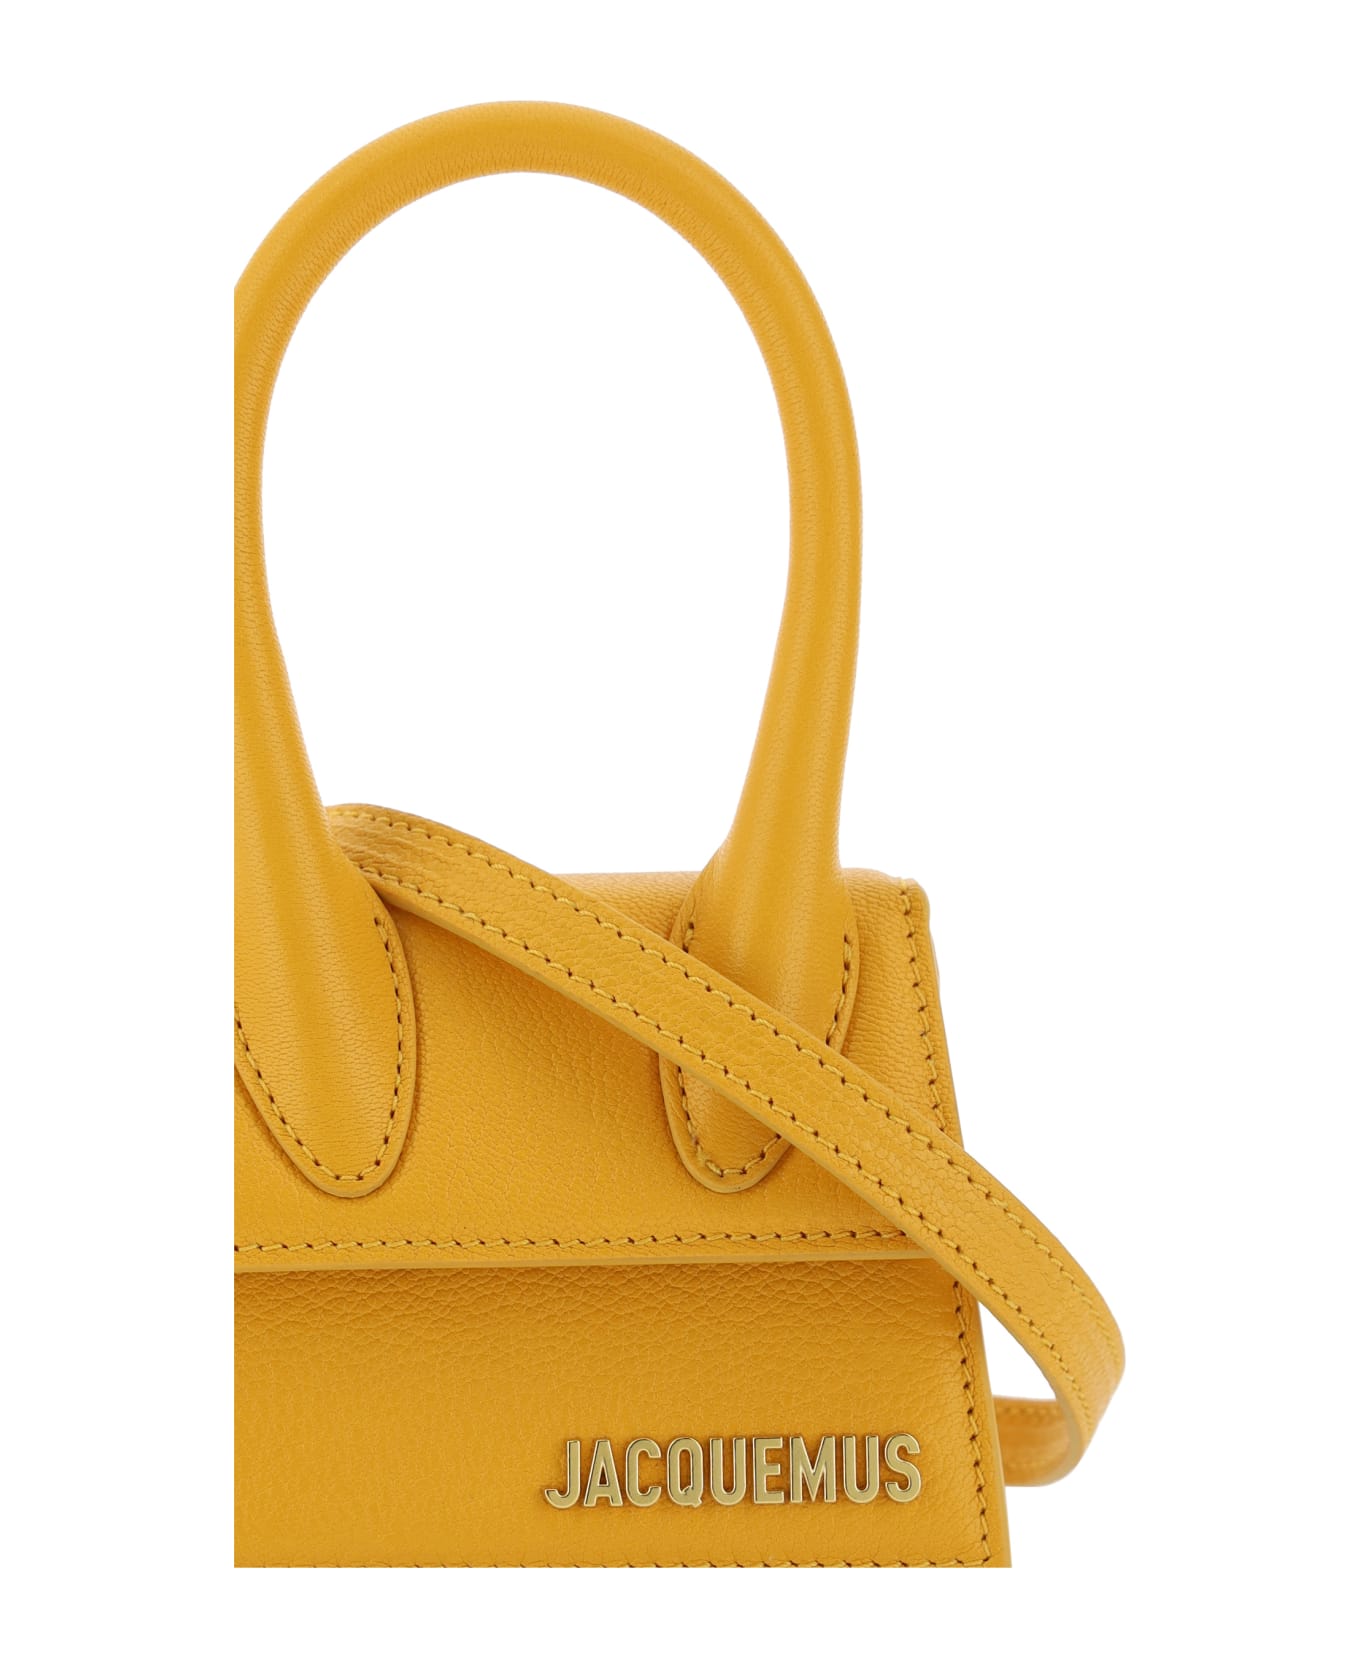 Jacquemus Le Chiquito Handbag - Dark Orange